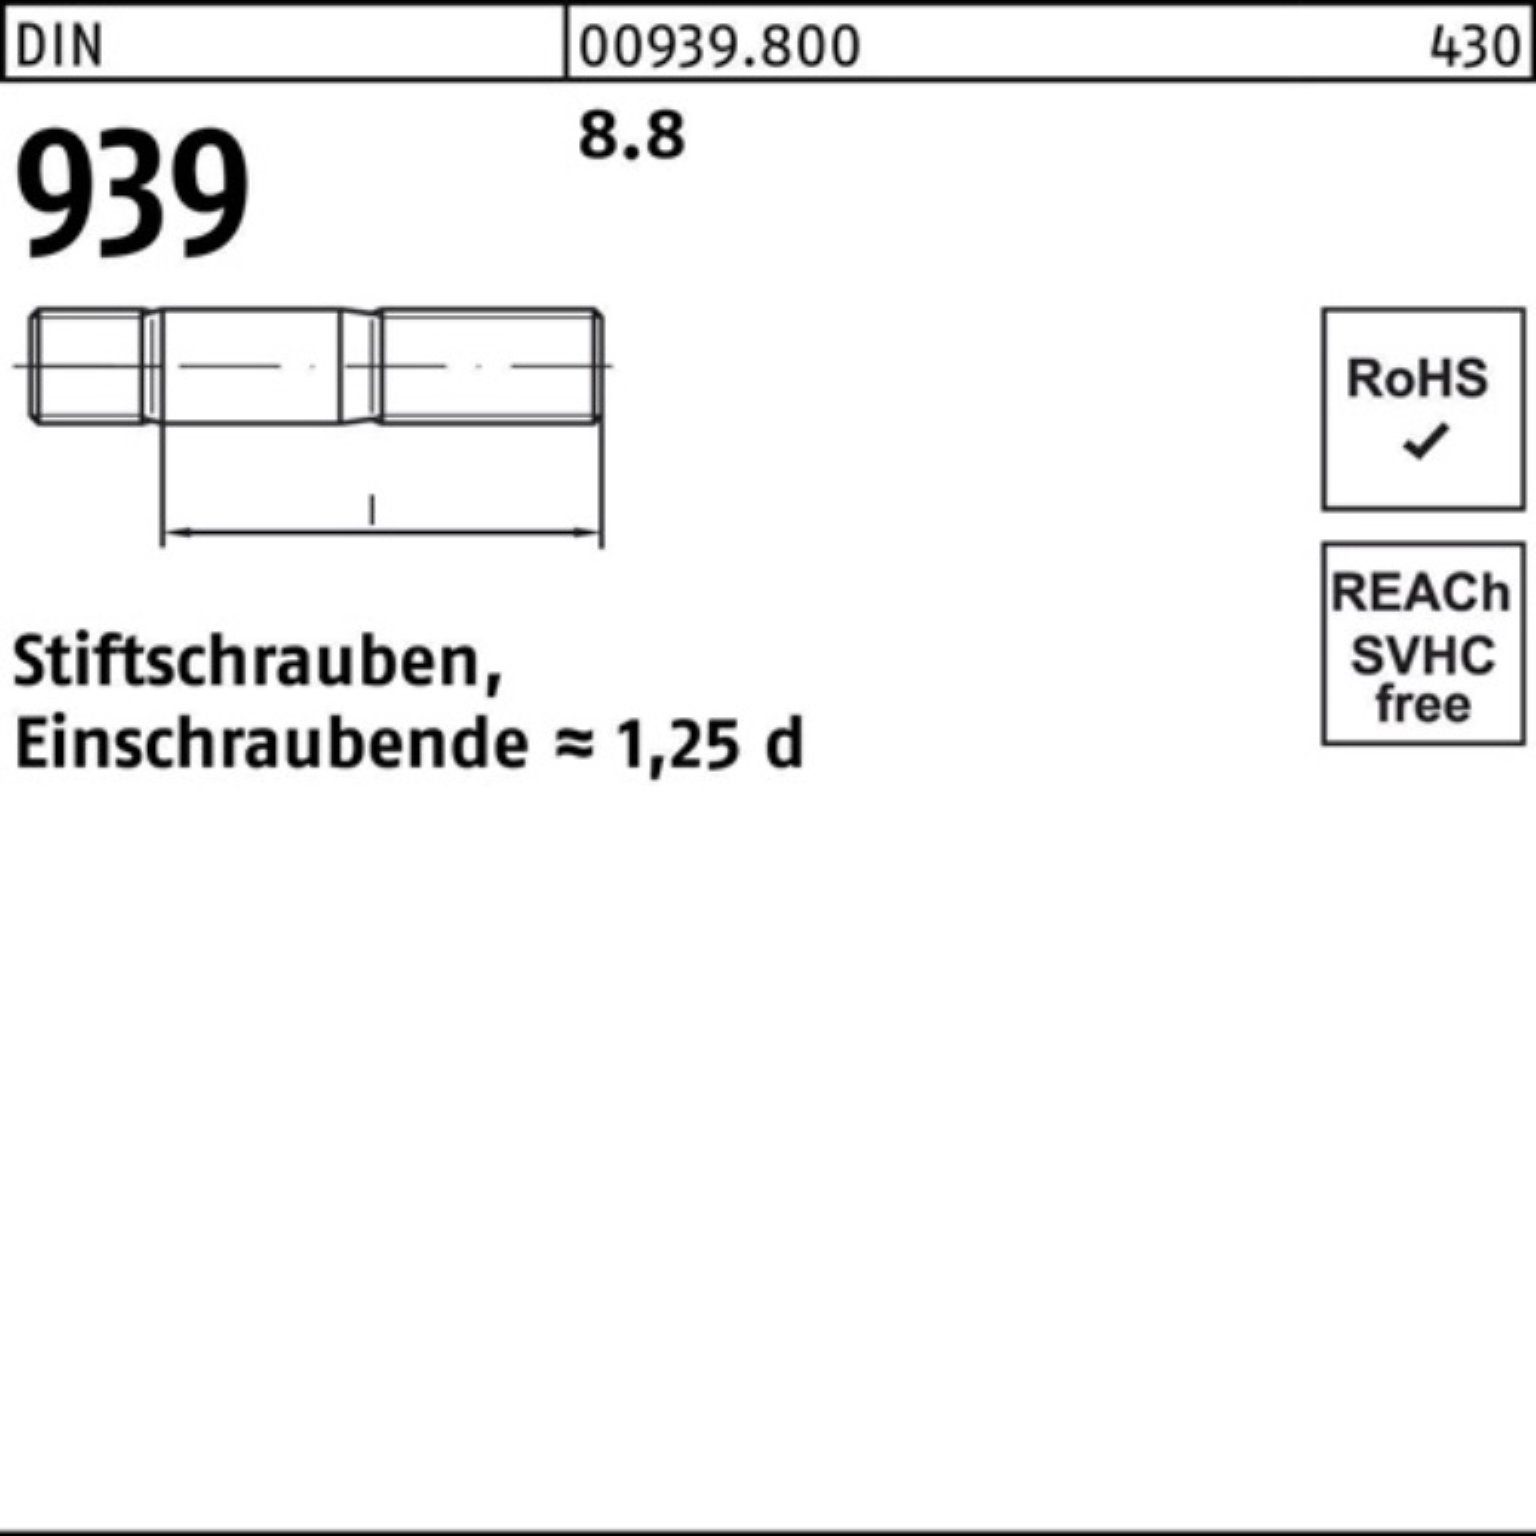 939 S Pack M20x Einschraubende=1,25d Reyher 100er Stiftschraube DIN Stiftschraube 1 140 8.8